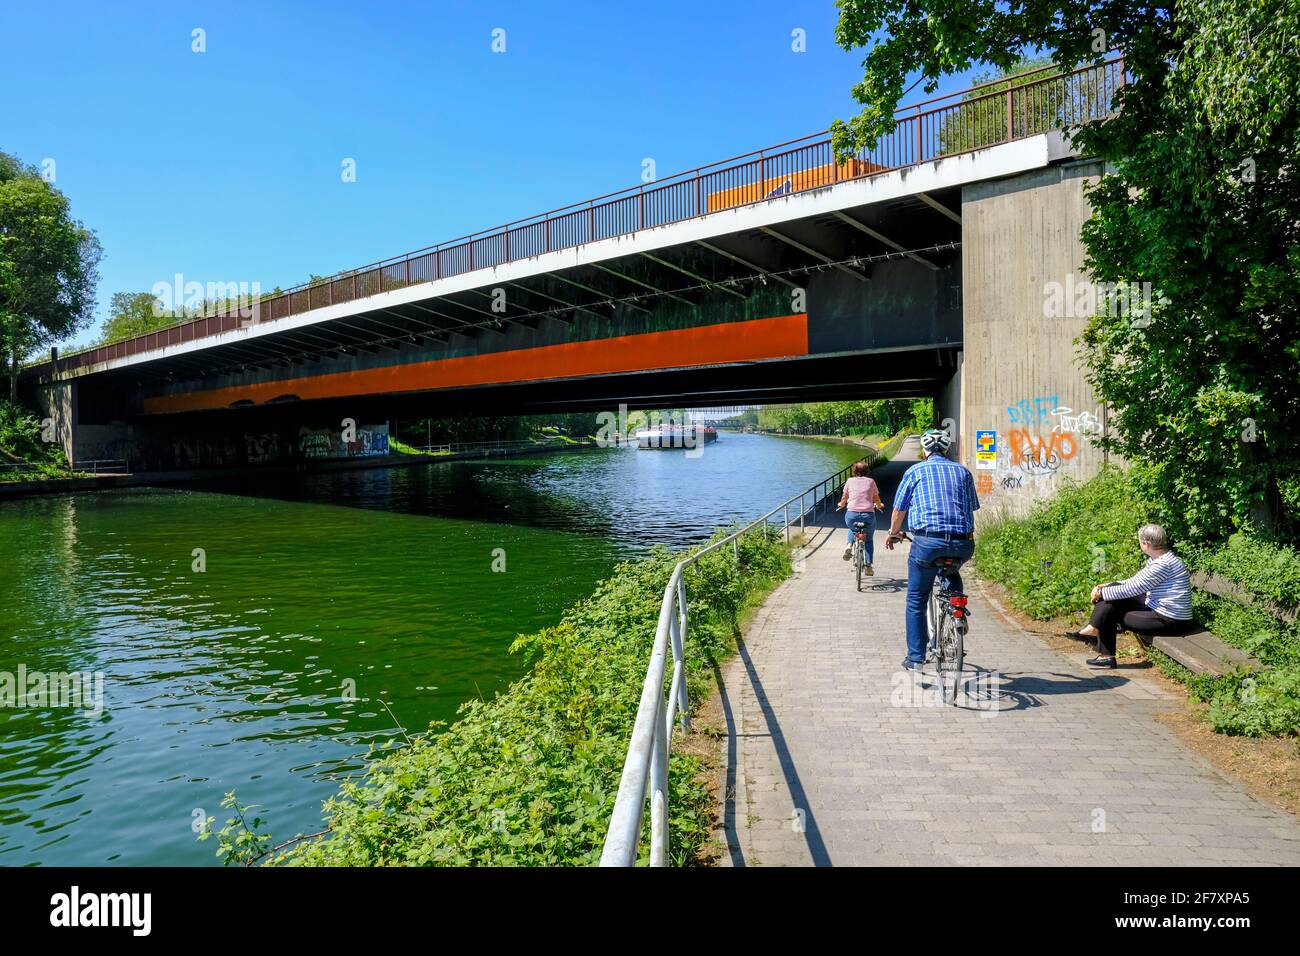 07.05.2020, Oberhausen, Nordrhein-Westfalen, Deutschland - Radfahrer auf einem Weg unter der Sterkrader-Strasse-Bruecke am Rhein-Herne-Kanal in Oberha Stock Photo